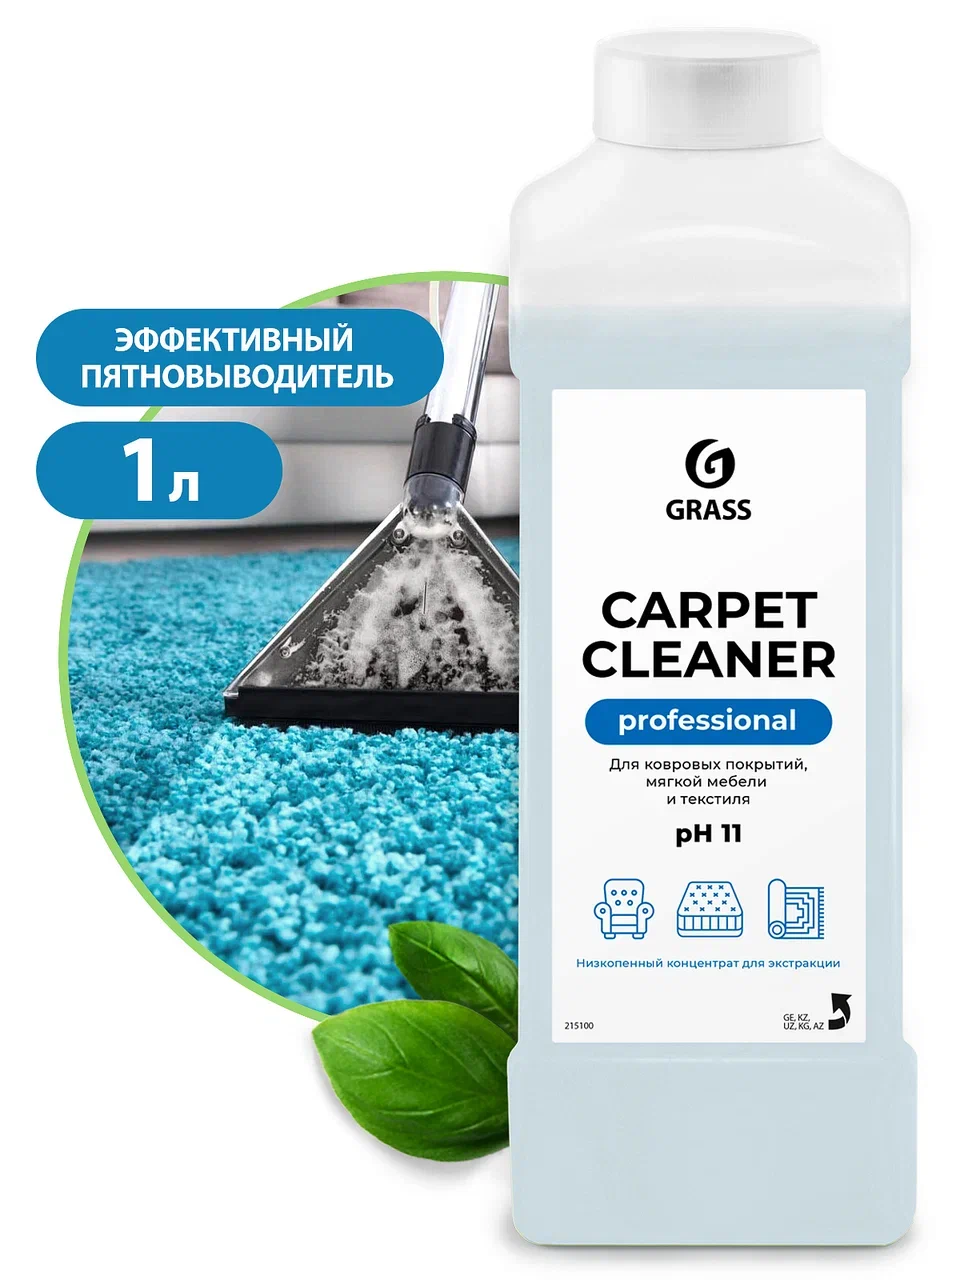 «Carpet Cleaner» (пятновыводитель), 1 л